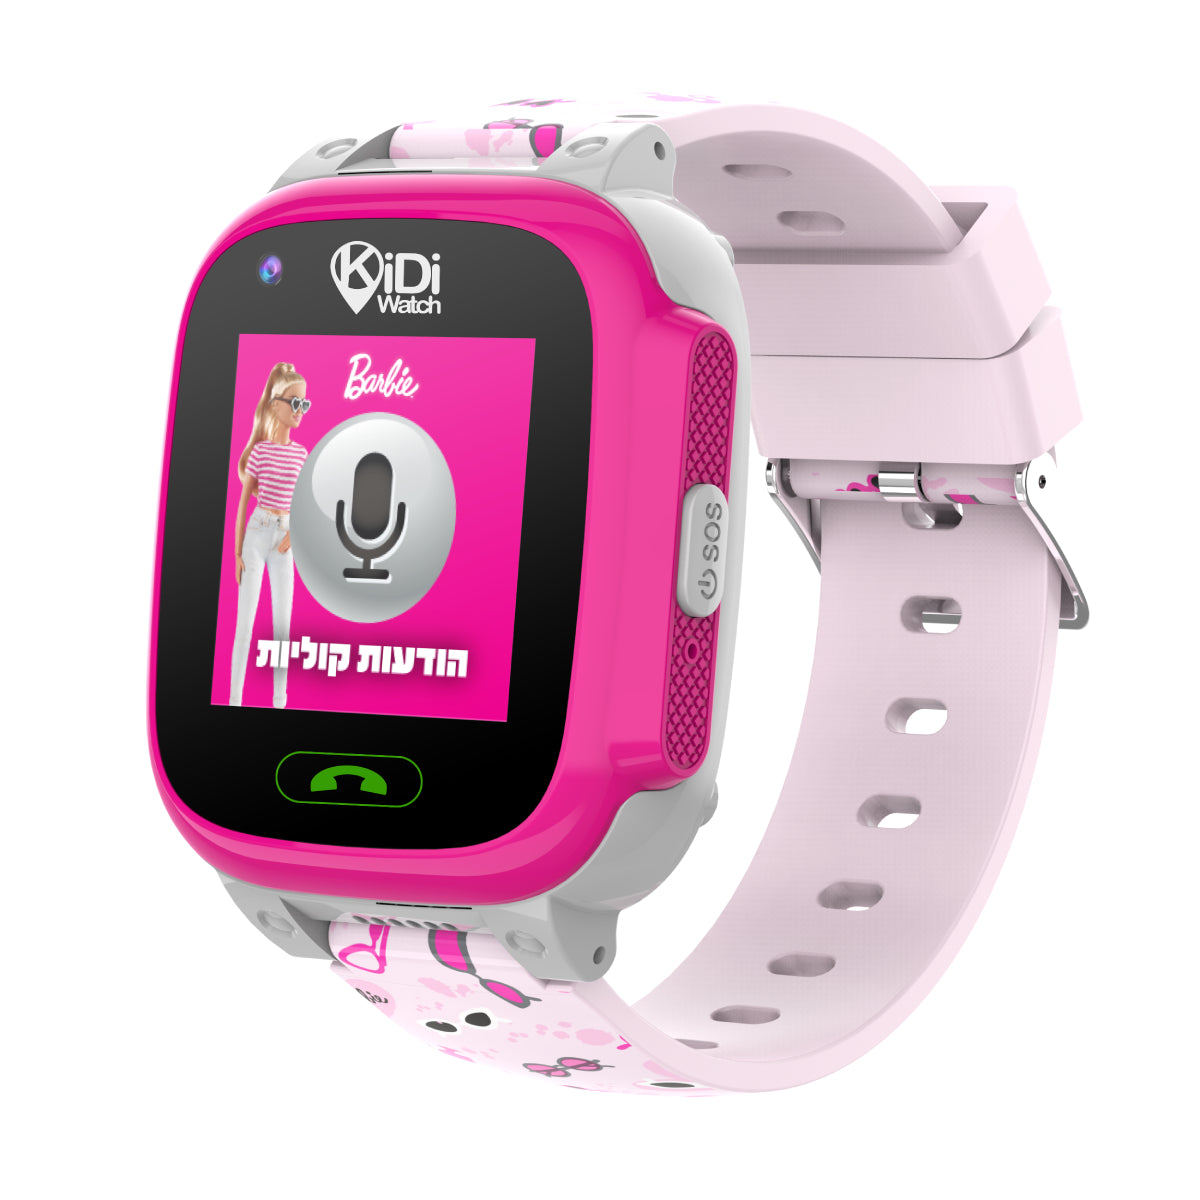 שעון חכם לילדים KidiWatch Friends Barbie 4G